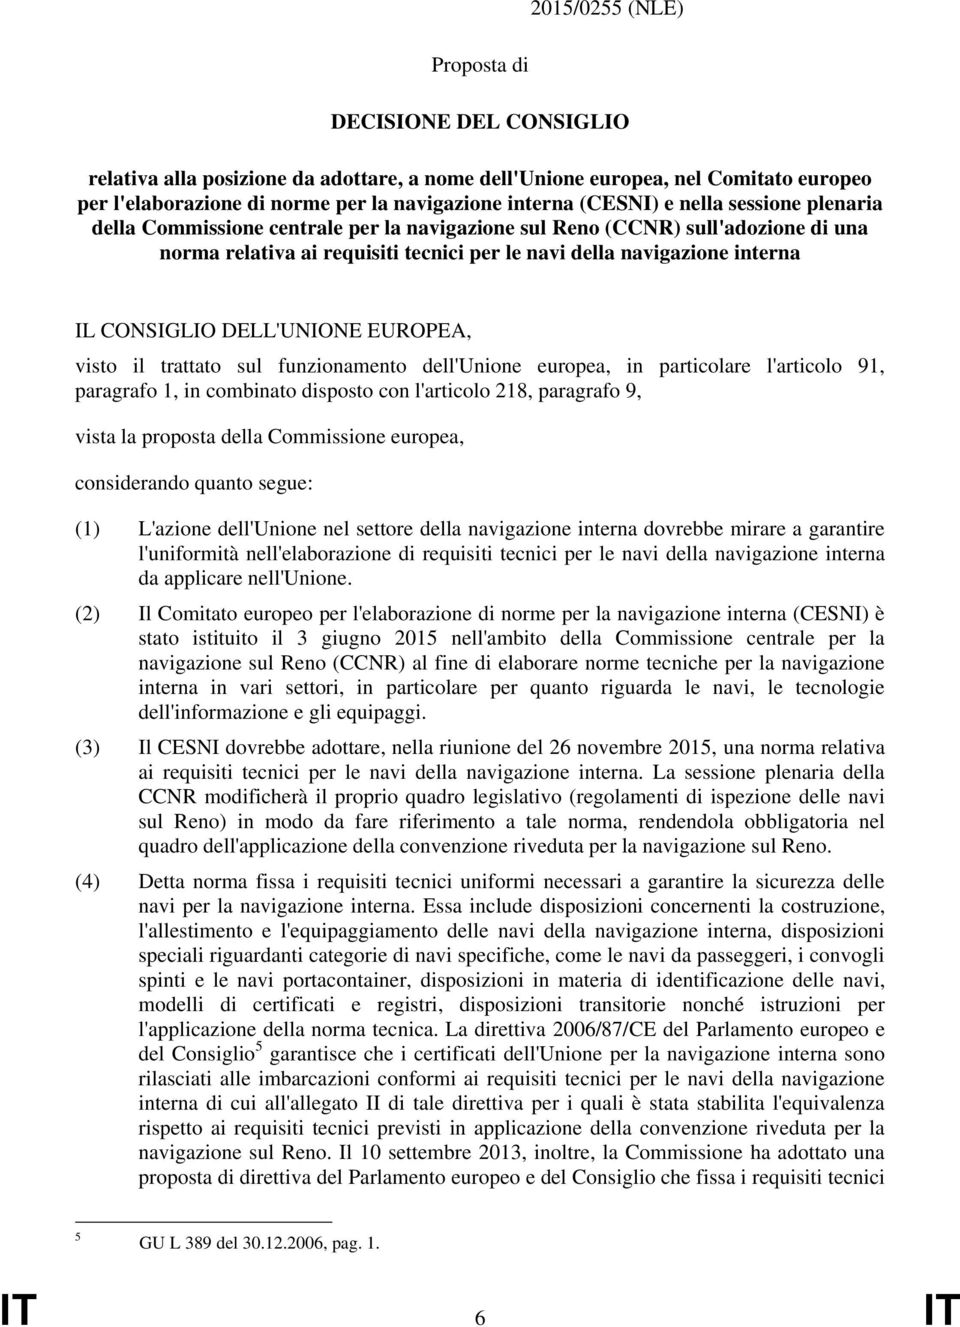 CONSIGLIO DELL'UNIONE EUROPEA, visto il trattato sul funzionamento dell'unione europea, in particolare l'articolo 91, paragrafo 1, in combinato disposto con l'articolo 218, paragrafo 9, vista la